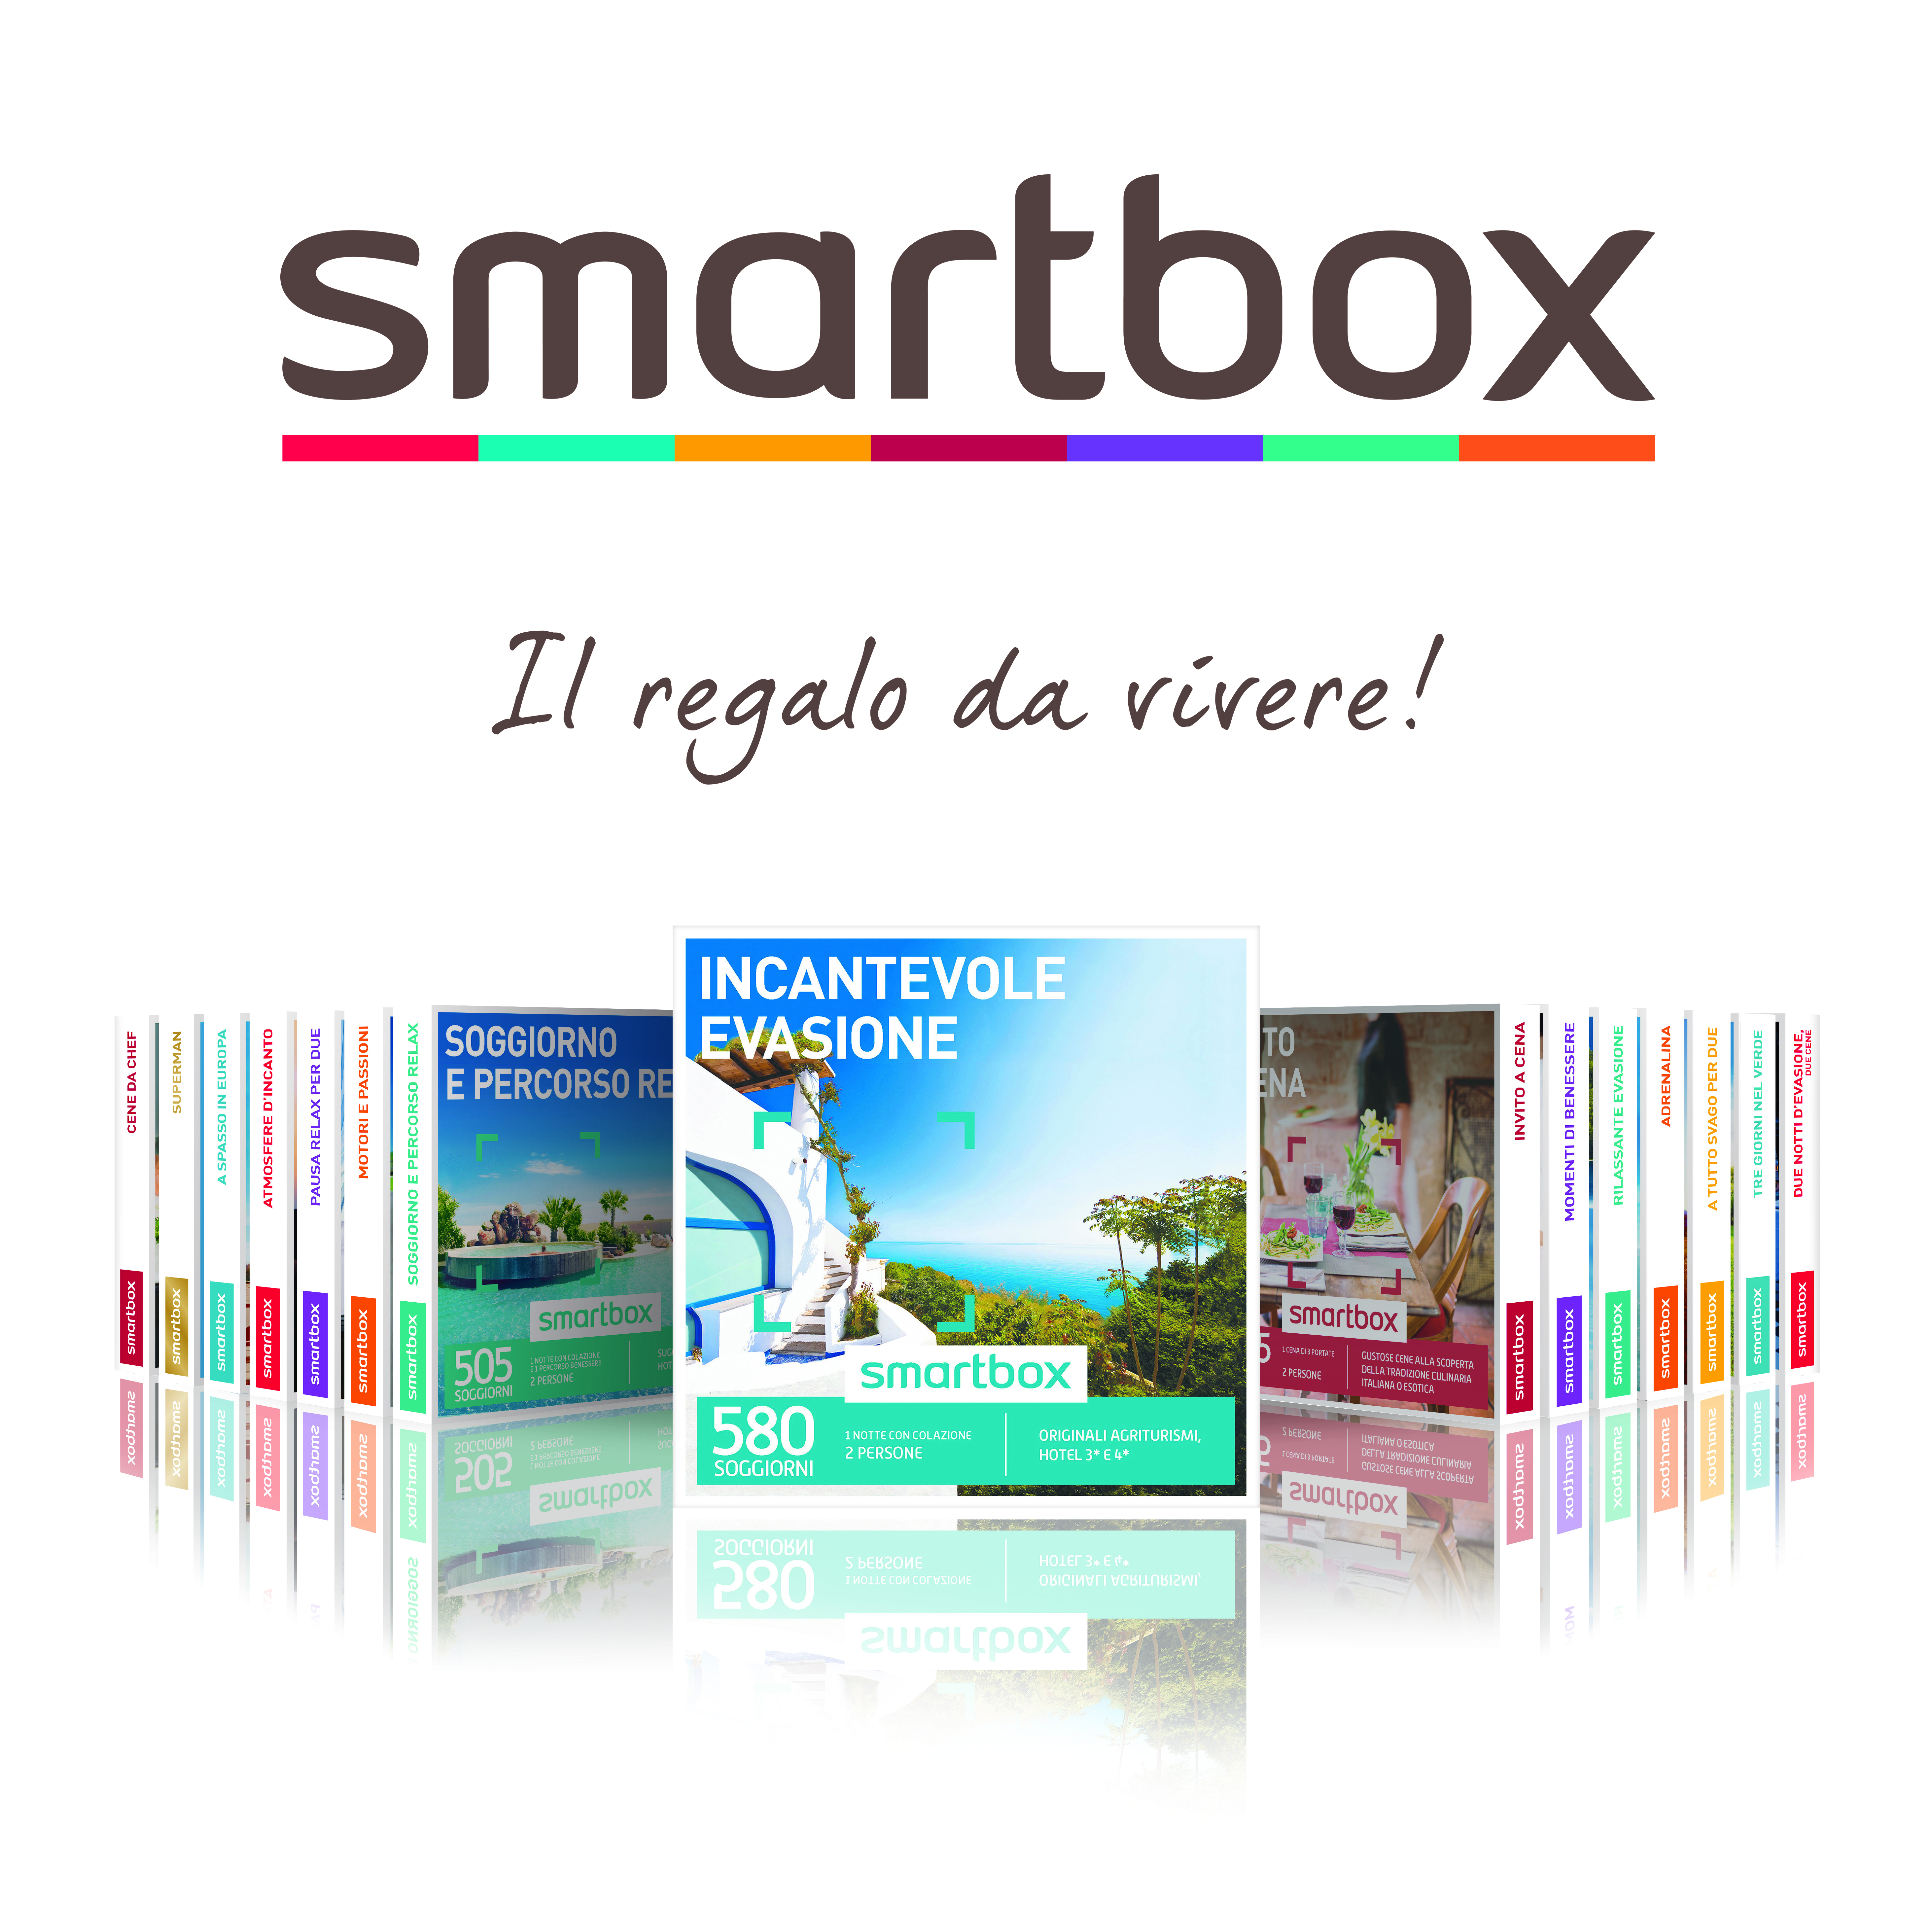 Smartbox acquisisce il brand Emozione3